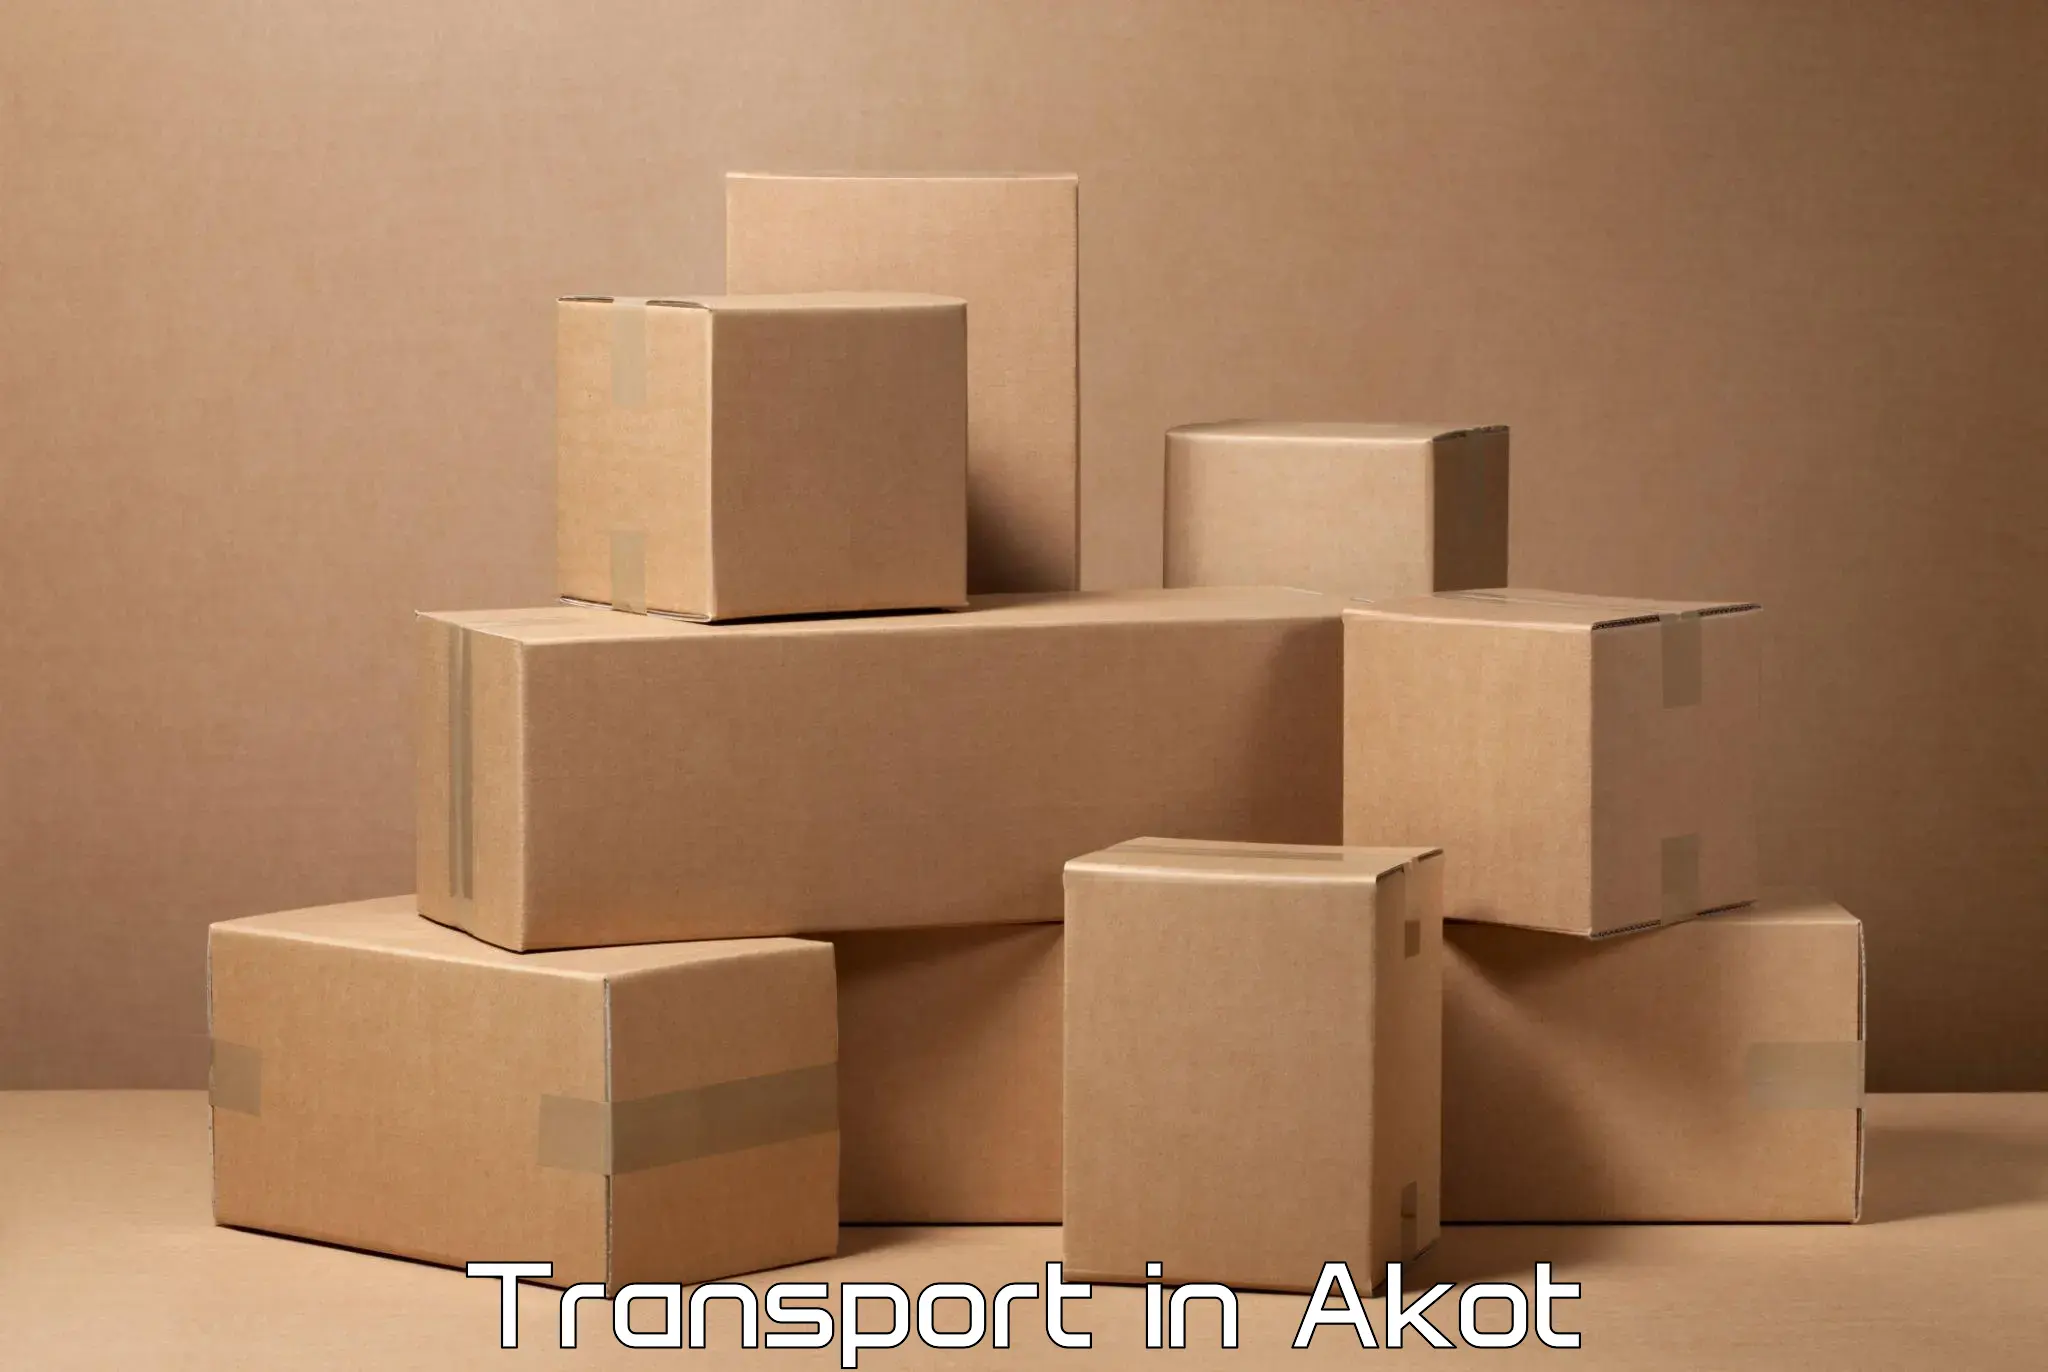 Furniture transport service in Akot